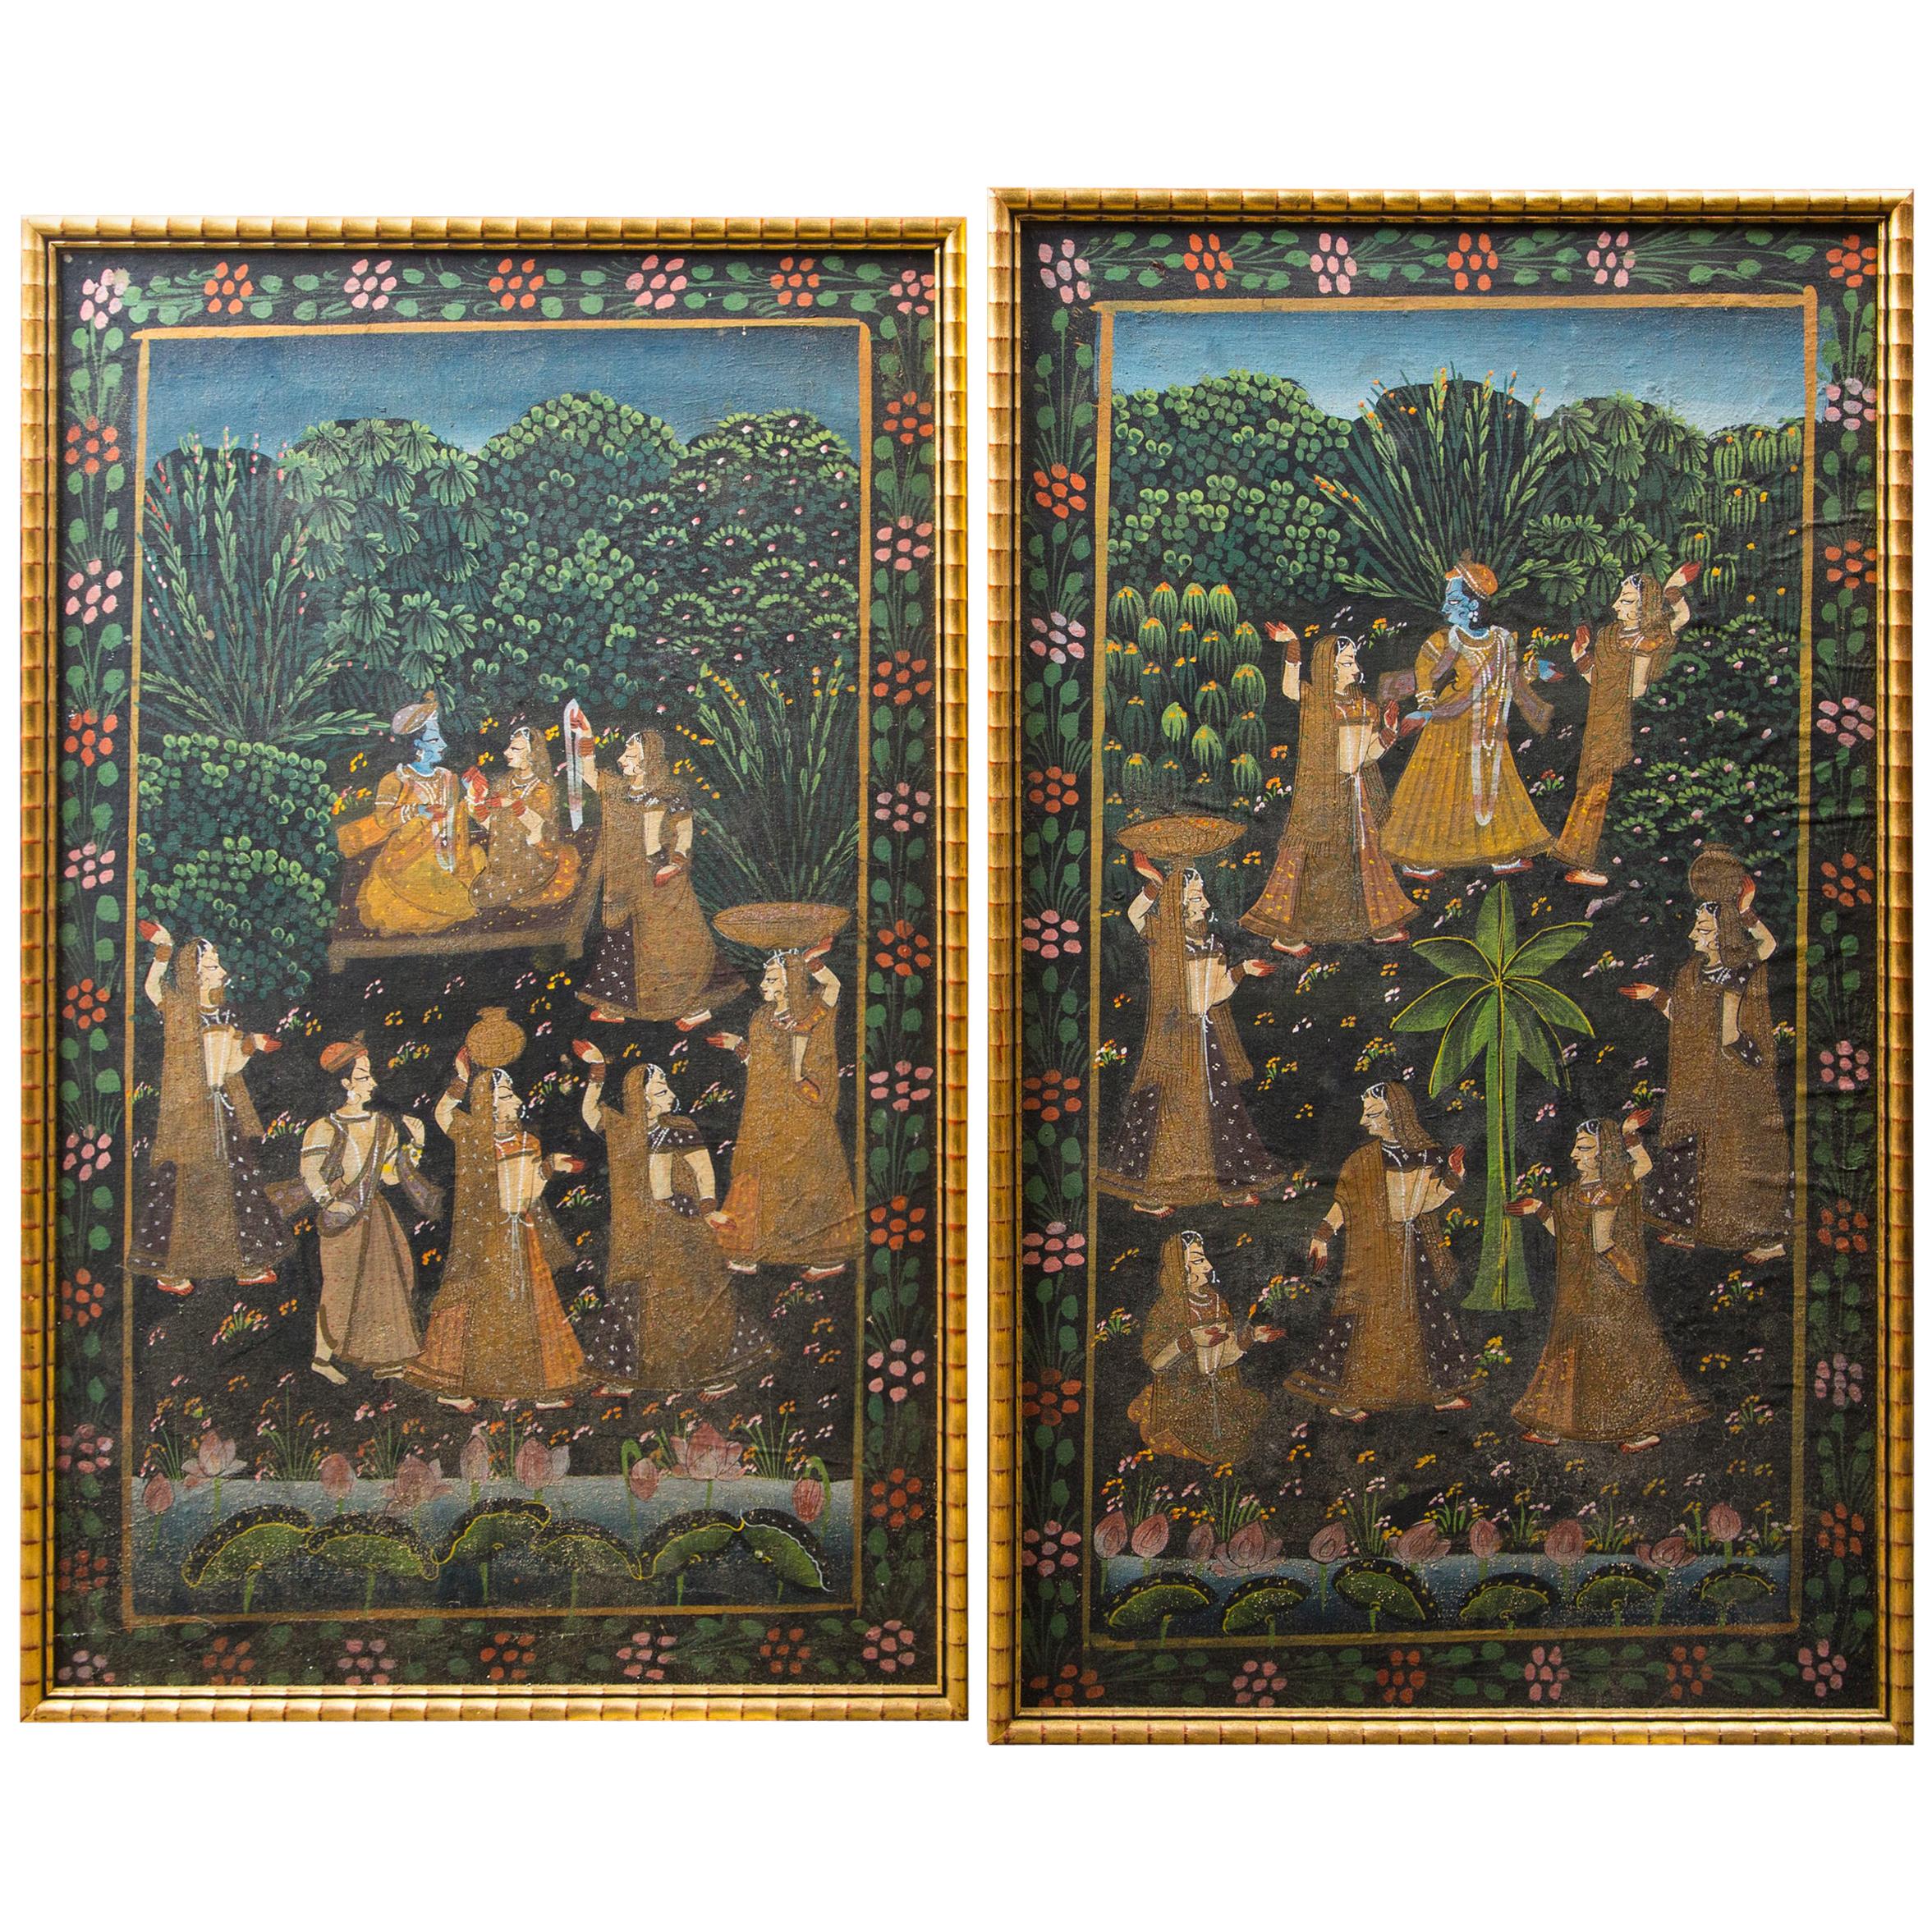  Pair of Hand Painted Indian Garden Scenes